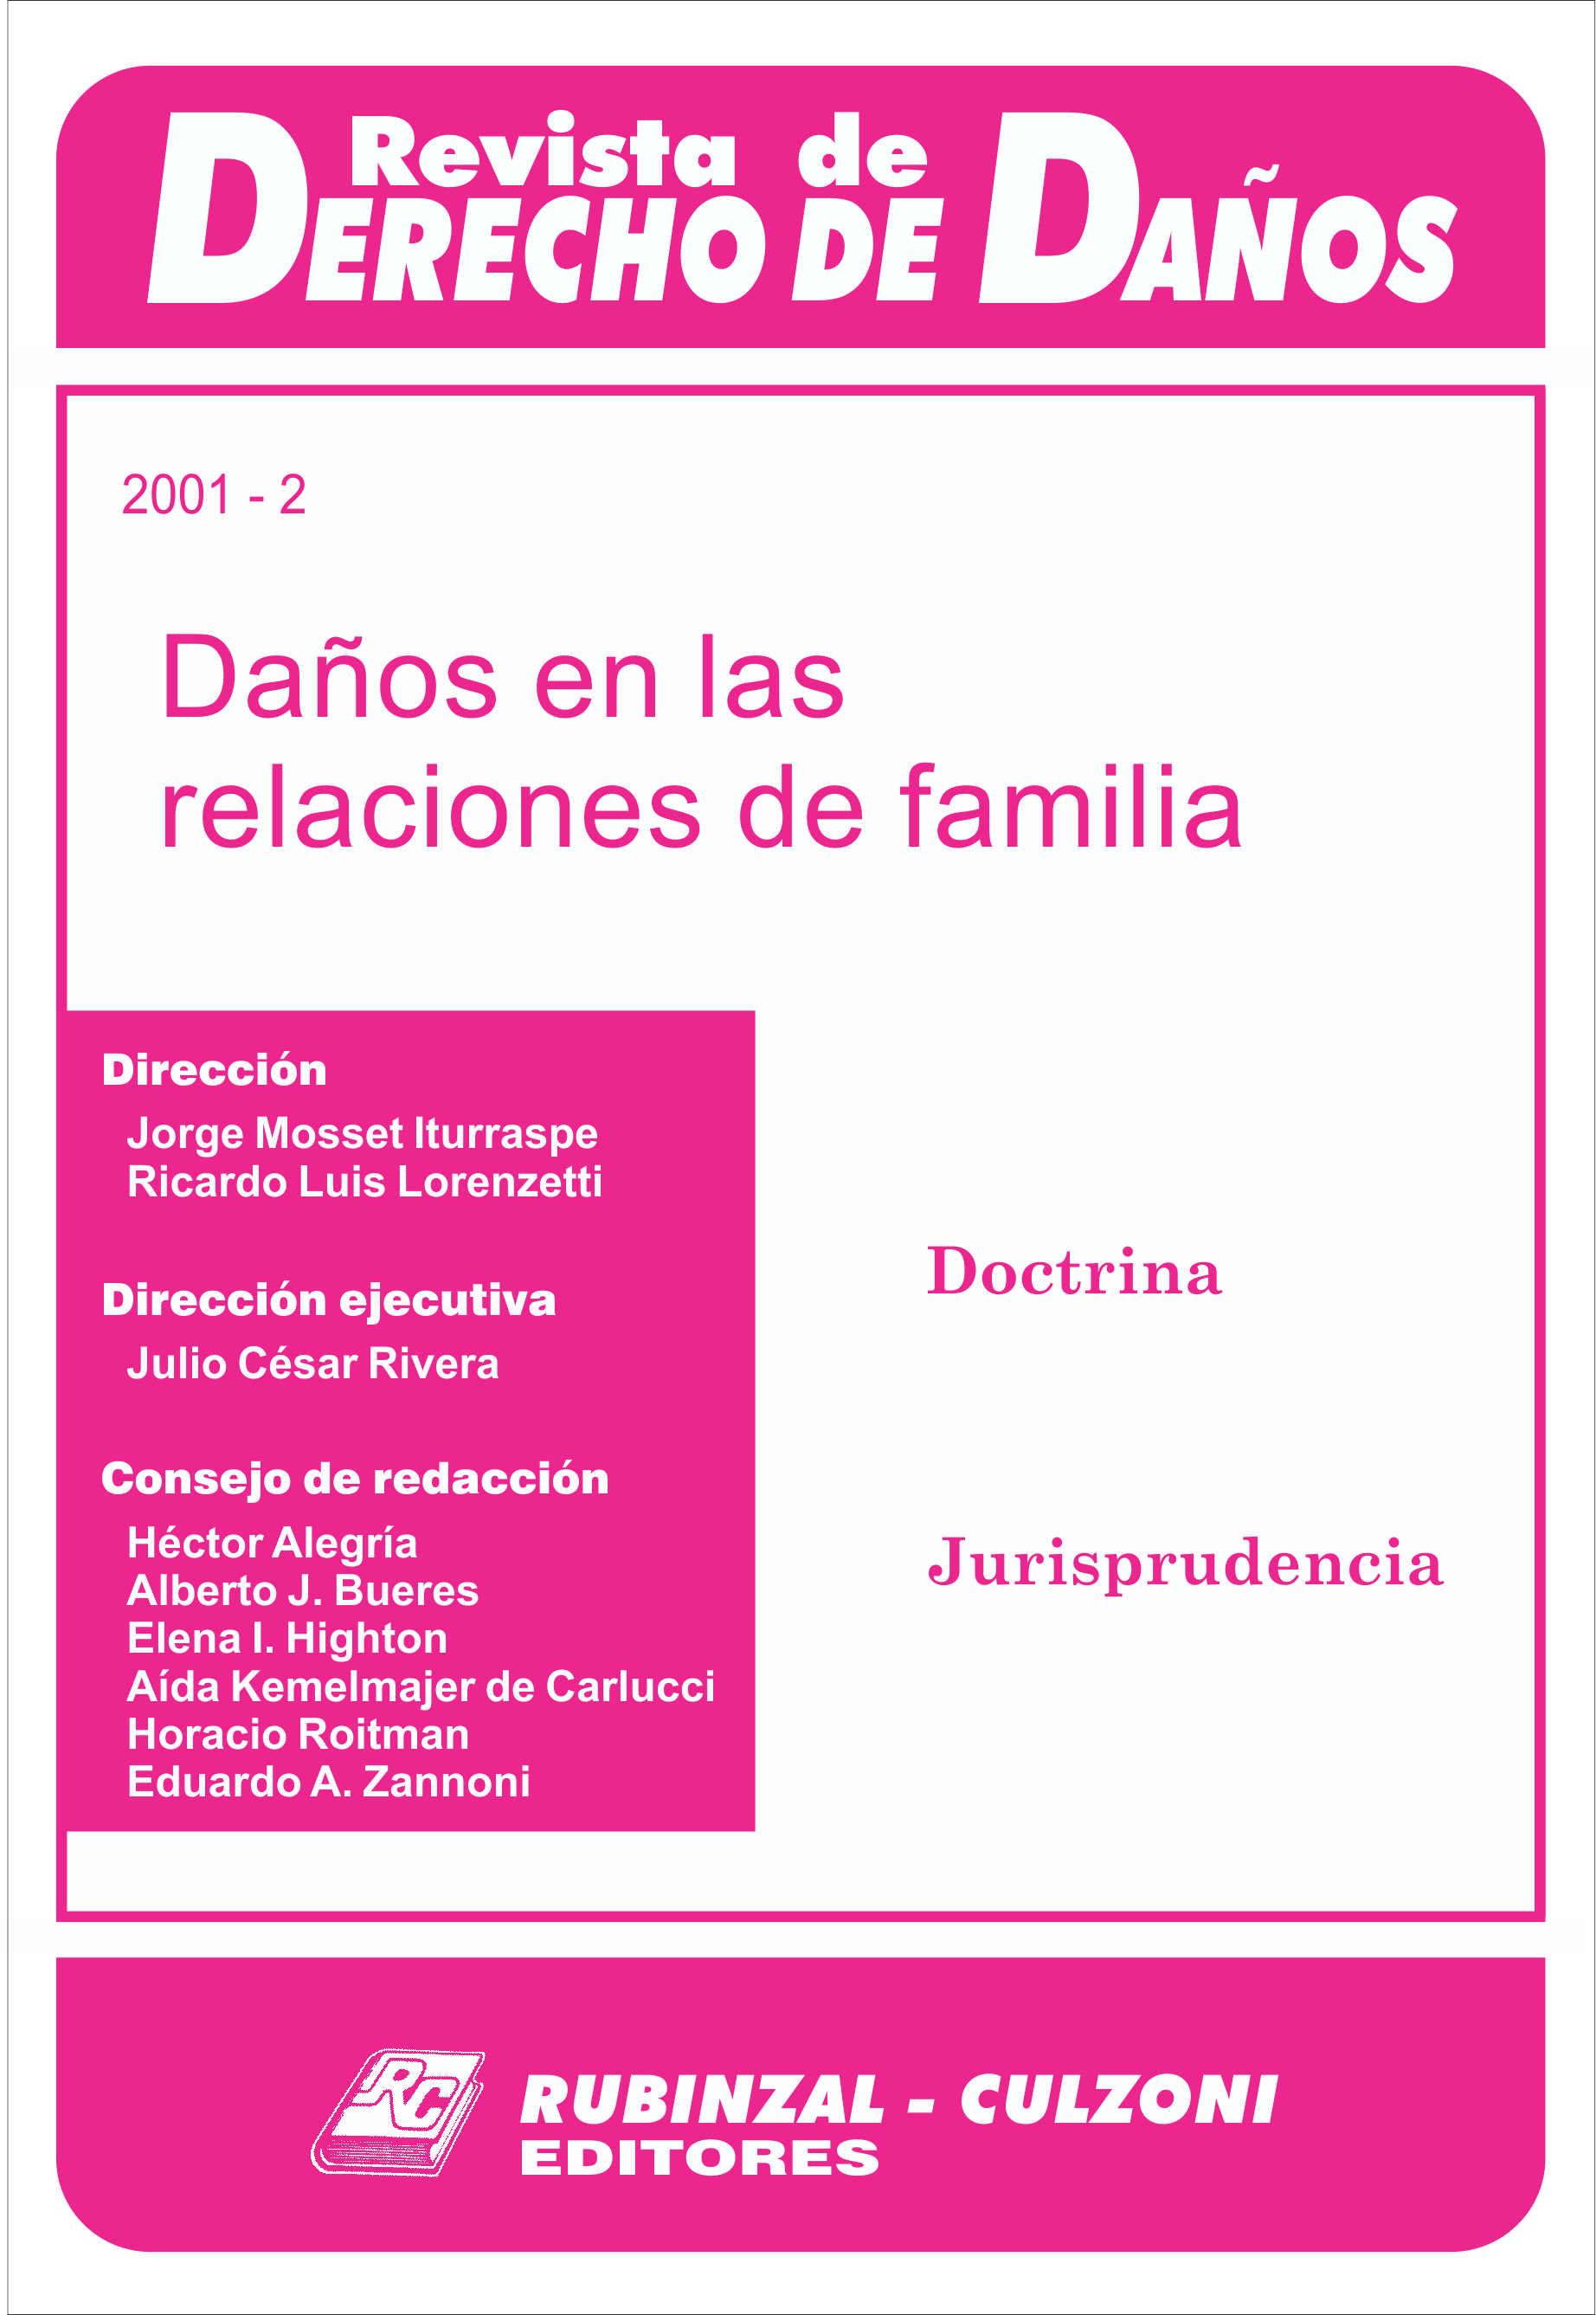 Revista de Derecho de Daños - Daños en las relaciones de familia